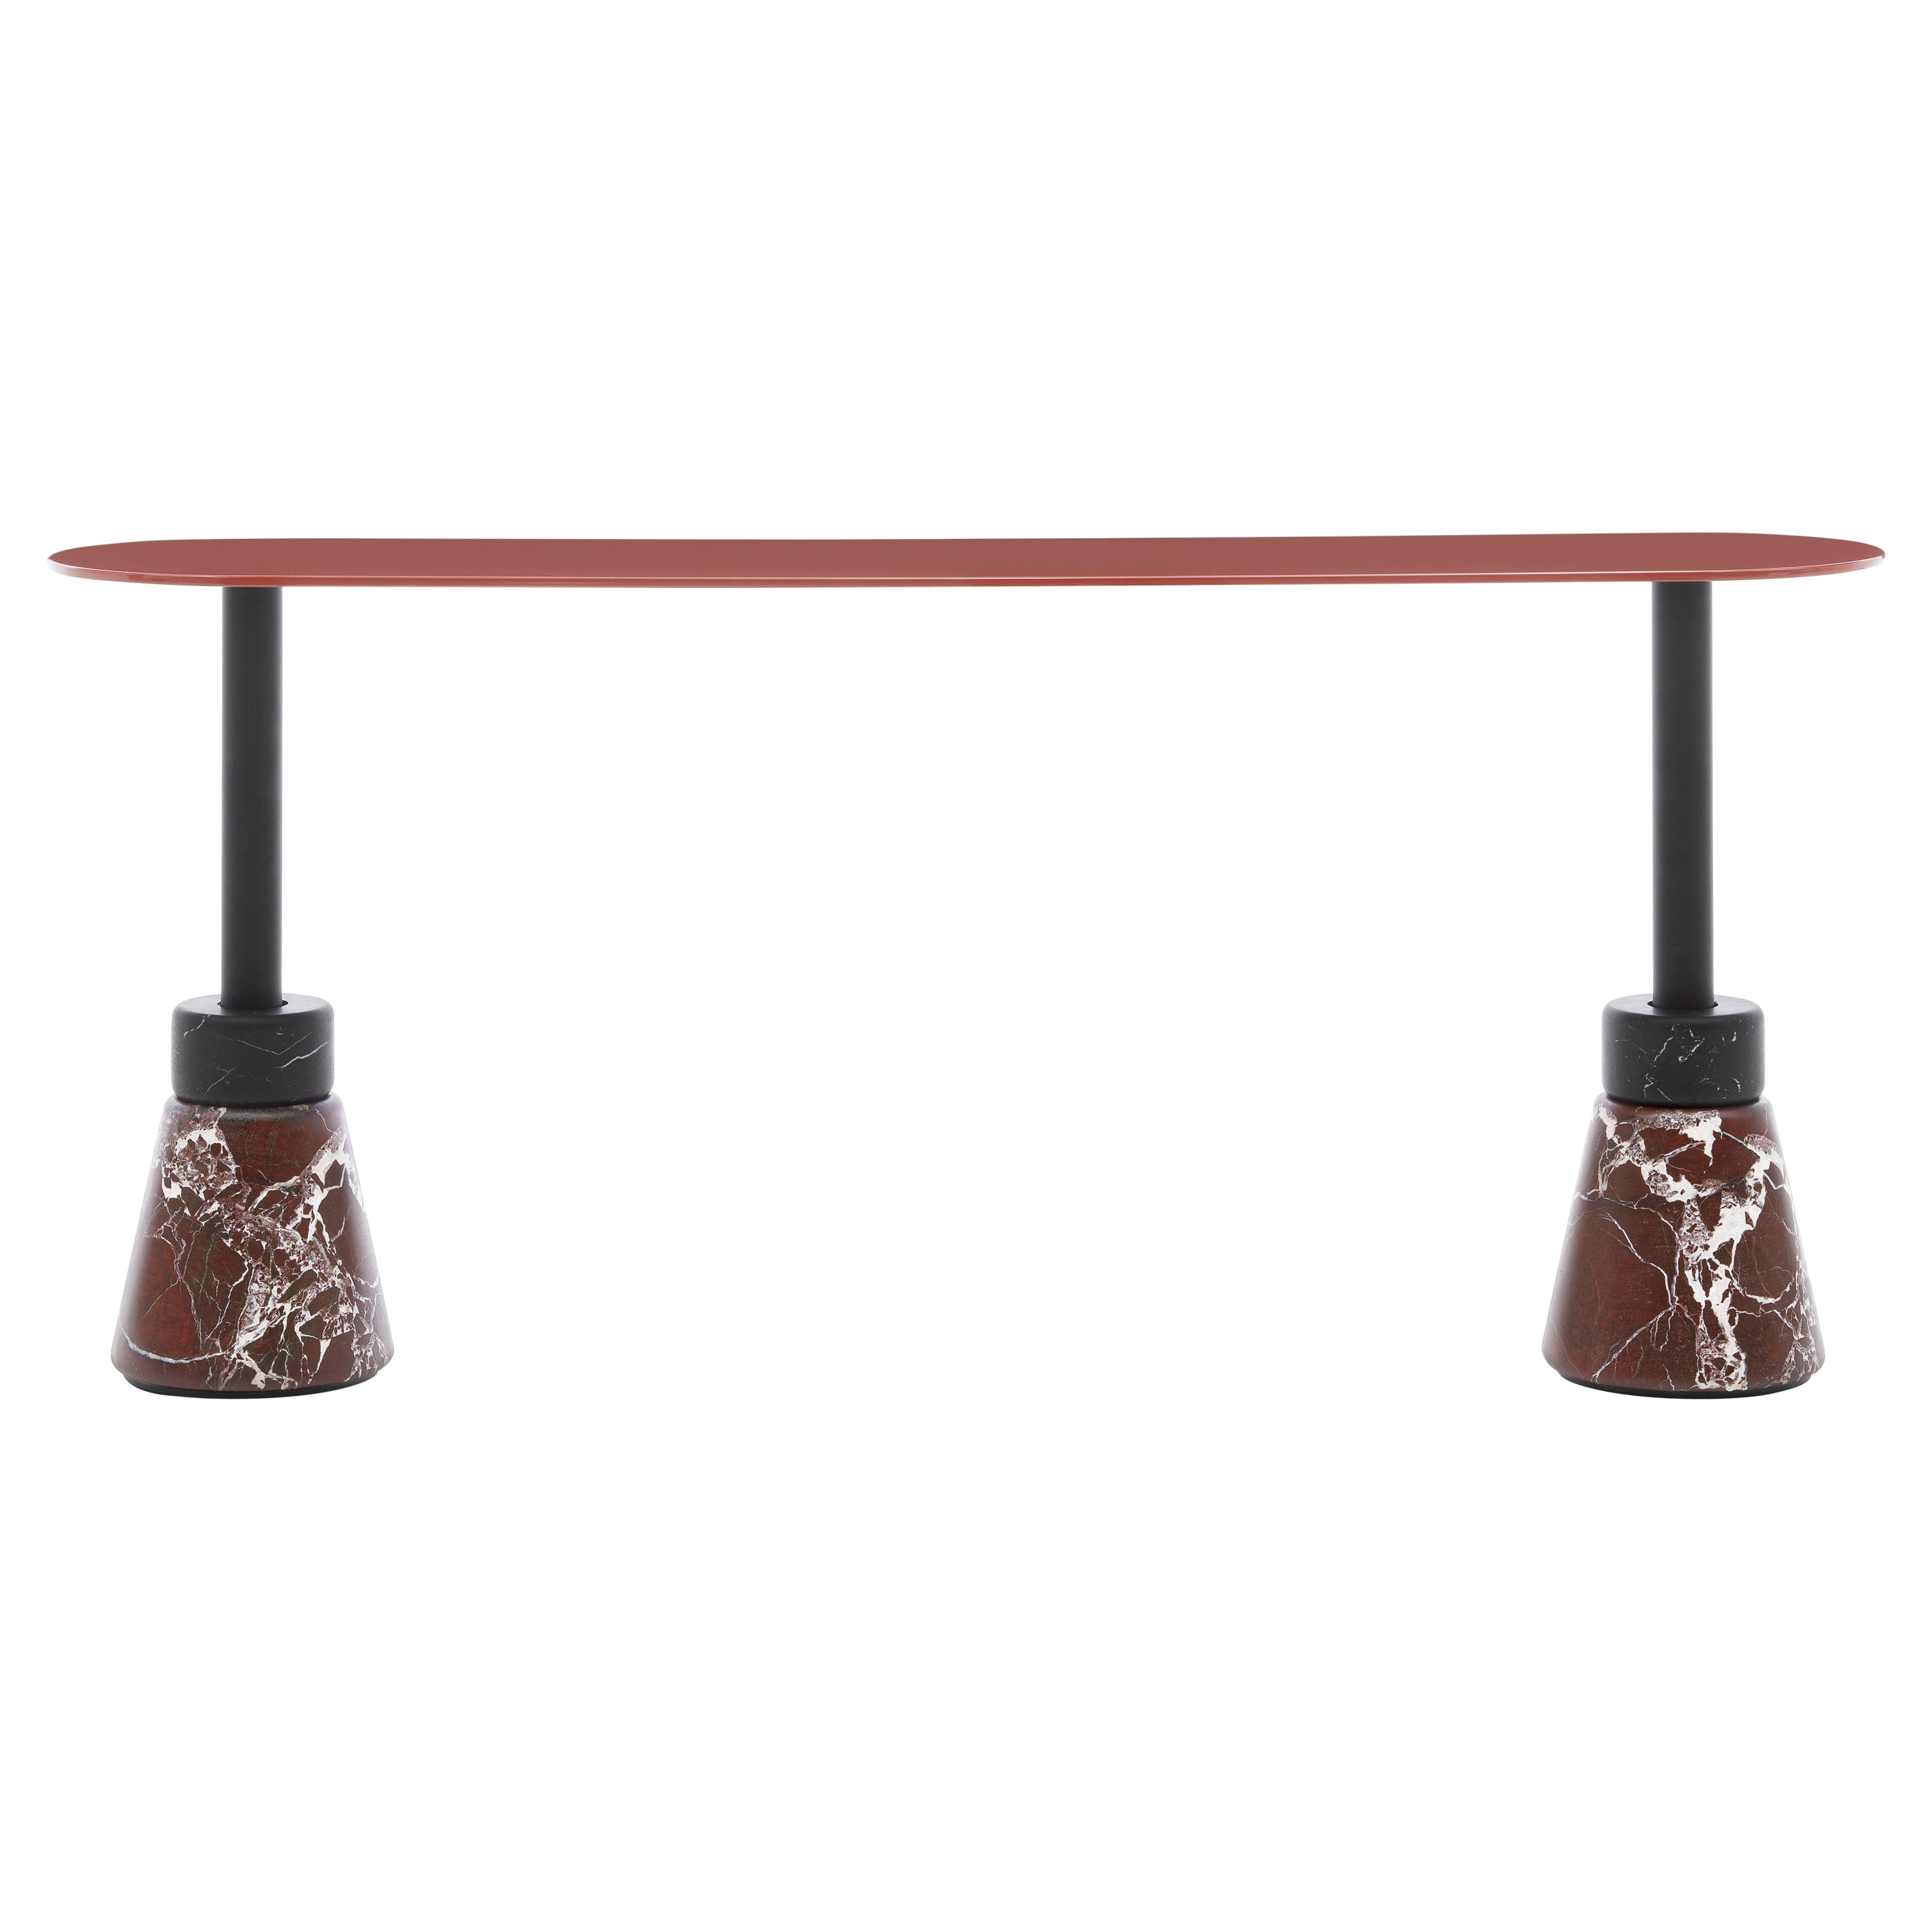 Acerbis Table basse rectangulaire Menhir avec base en marbre rouge/noir et plateau rouge brique